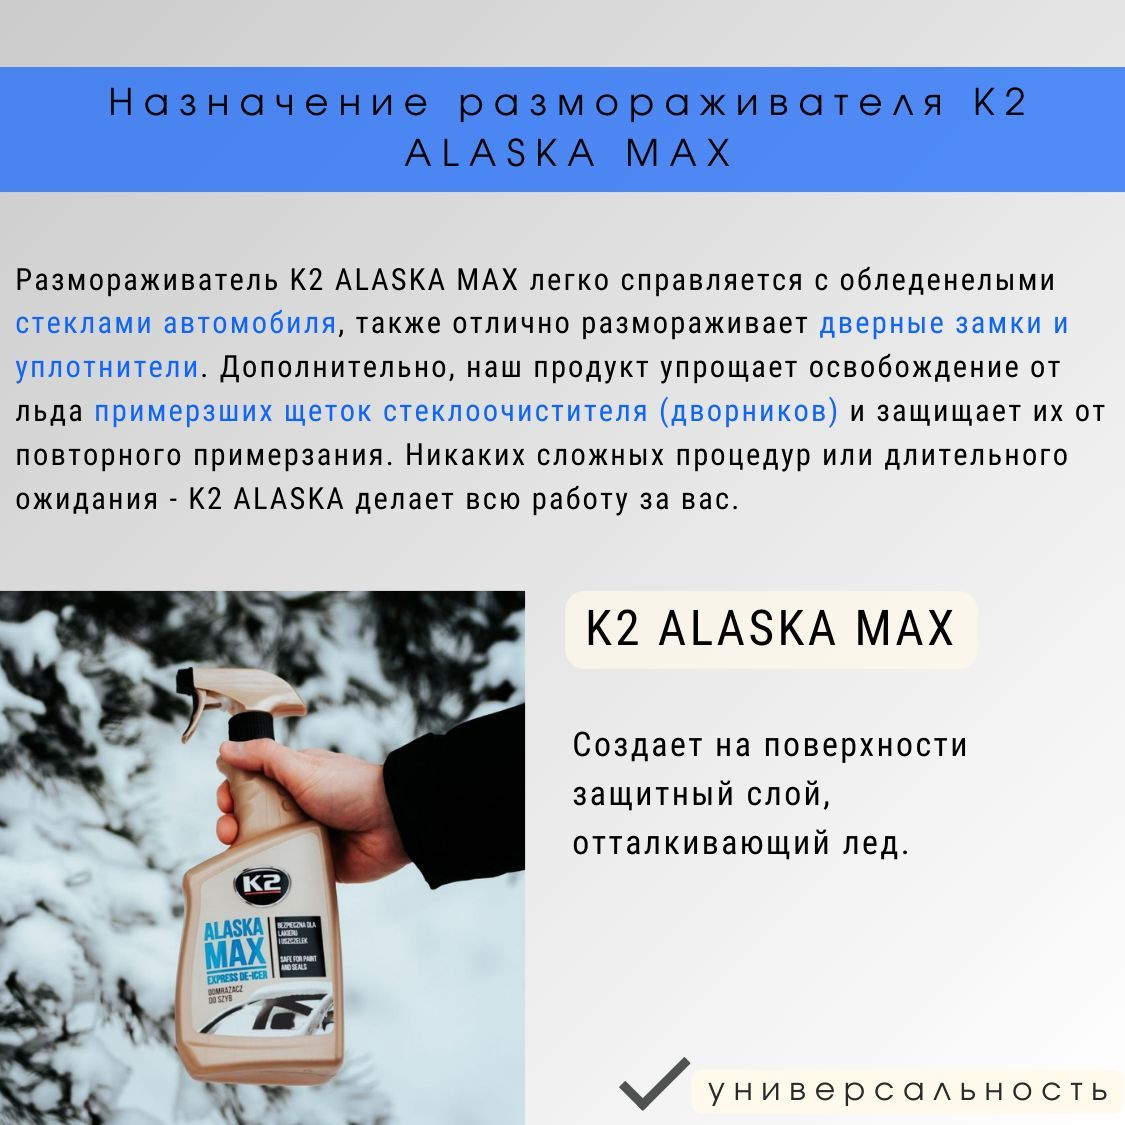 Размораживатель K2 ALASKA MAX легко справляется с обледенелыми стеклами автомобиля, также отлично размораживает дверные замки и уплотнители. Дополнительно, антилед K2 ALASKA упрощает освобождение от льда примерзших щеток стеклоочистителя (дворников) и защищает их от повторного примерзания. Никаких сложных процедур или длительного ожидания - K2 ALASKA MAX делает всю работу за вас. Создает на поверхности защитный слой, отталкивающий лед.